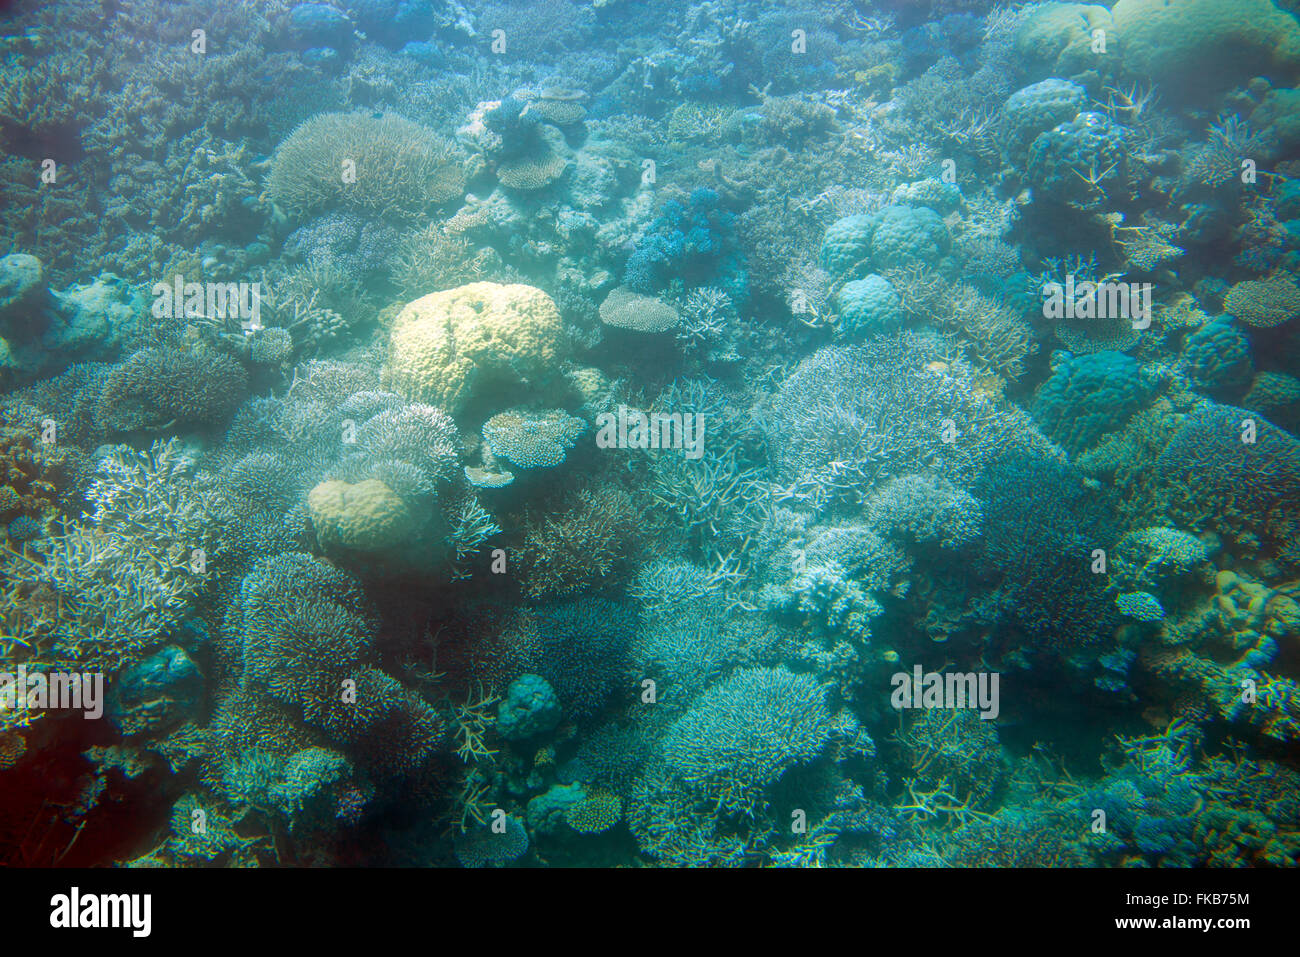 Le barriere coralline di Agincourt sono un piccolo gruppo di barriere coralline sul bordo molto esterno della Grande barriera Corallina al largo della costa di Port Douglas nelle Regine nord-orientali Foto Stock